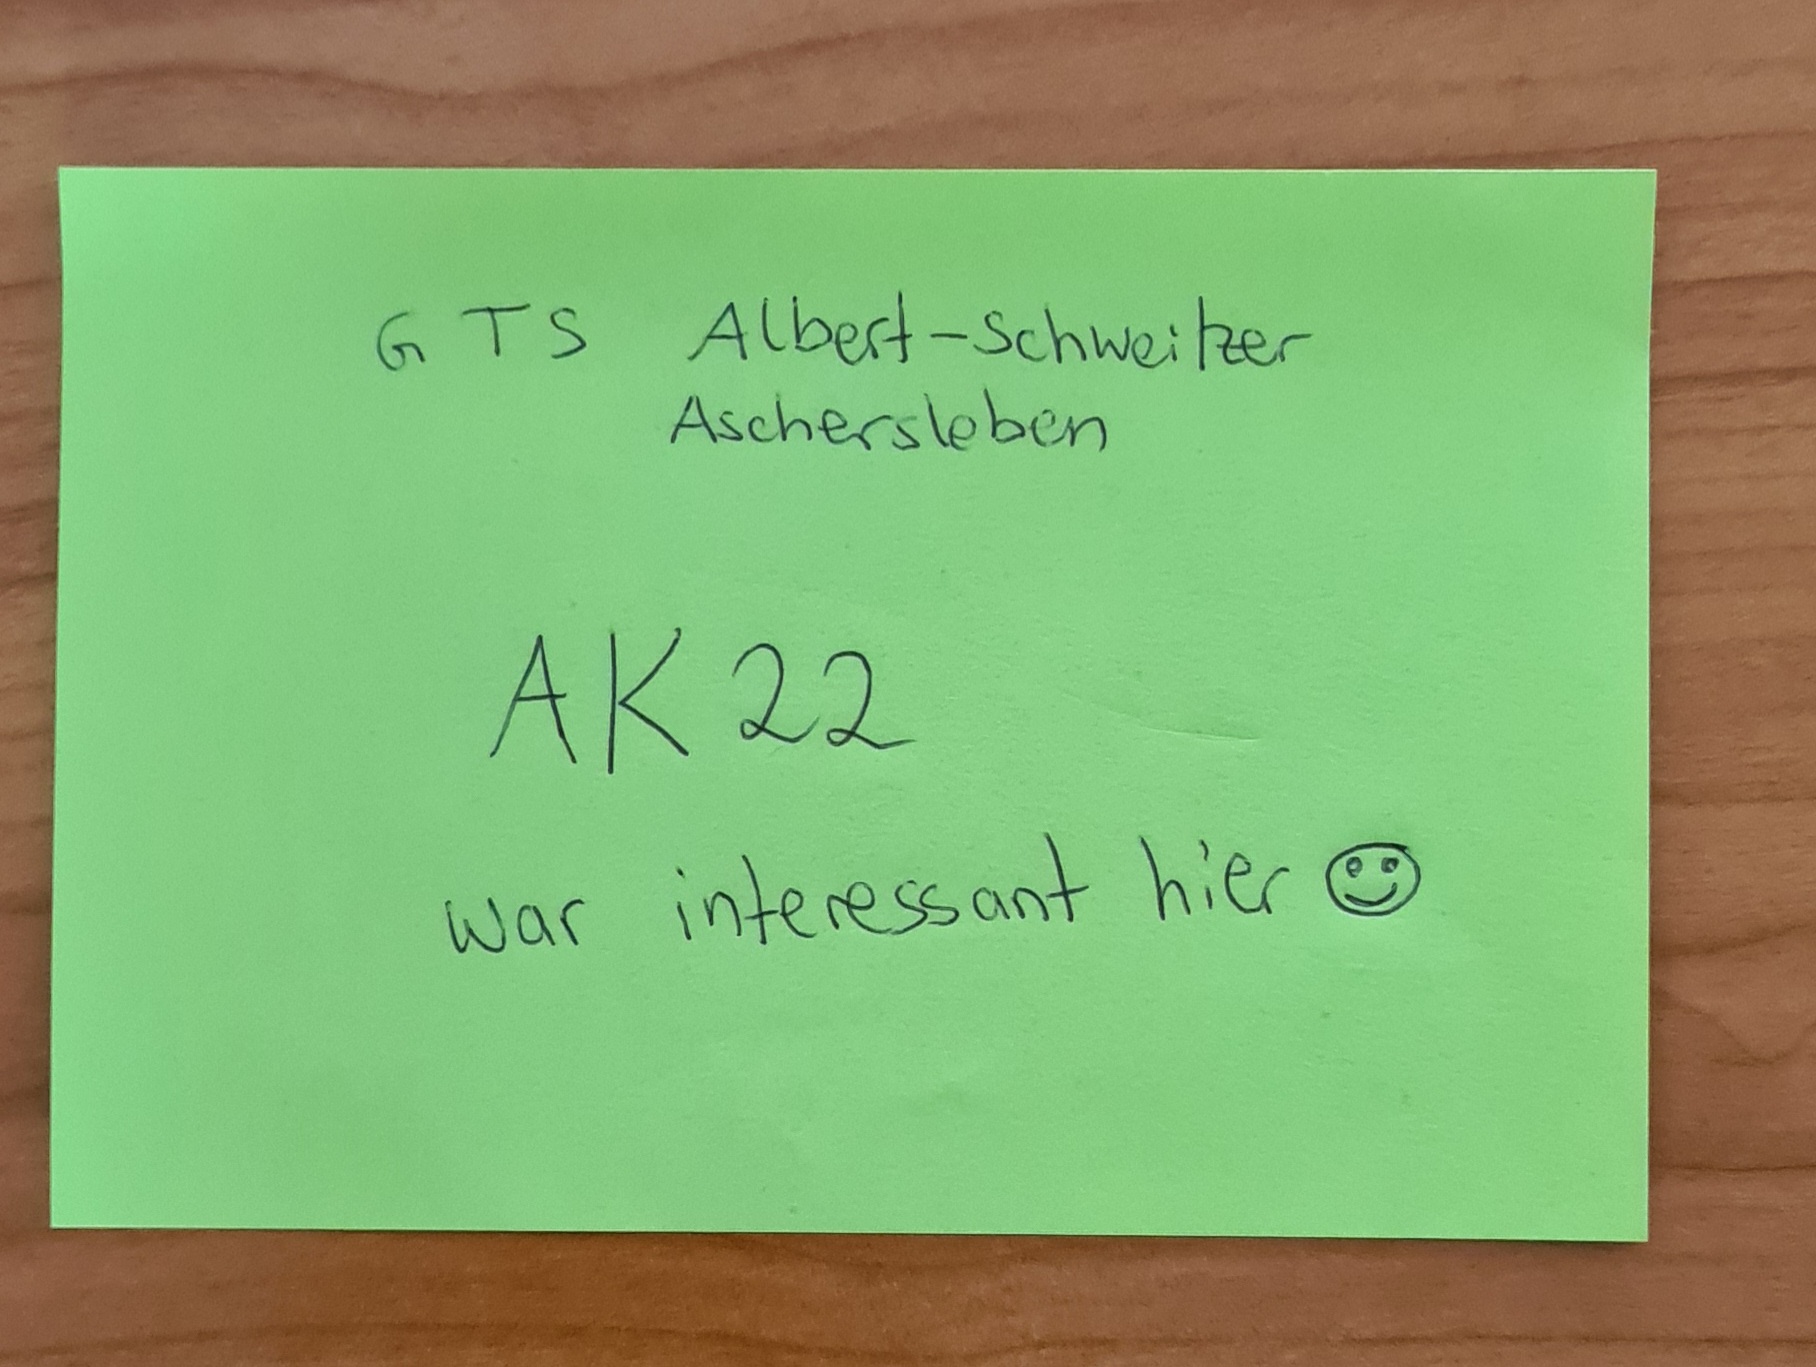 GTS Albert-Schweitzer Aschersleben AK22 – war interessant hier :)